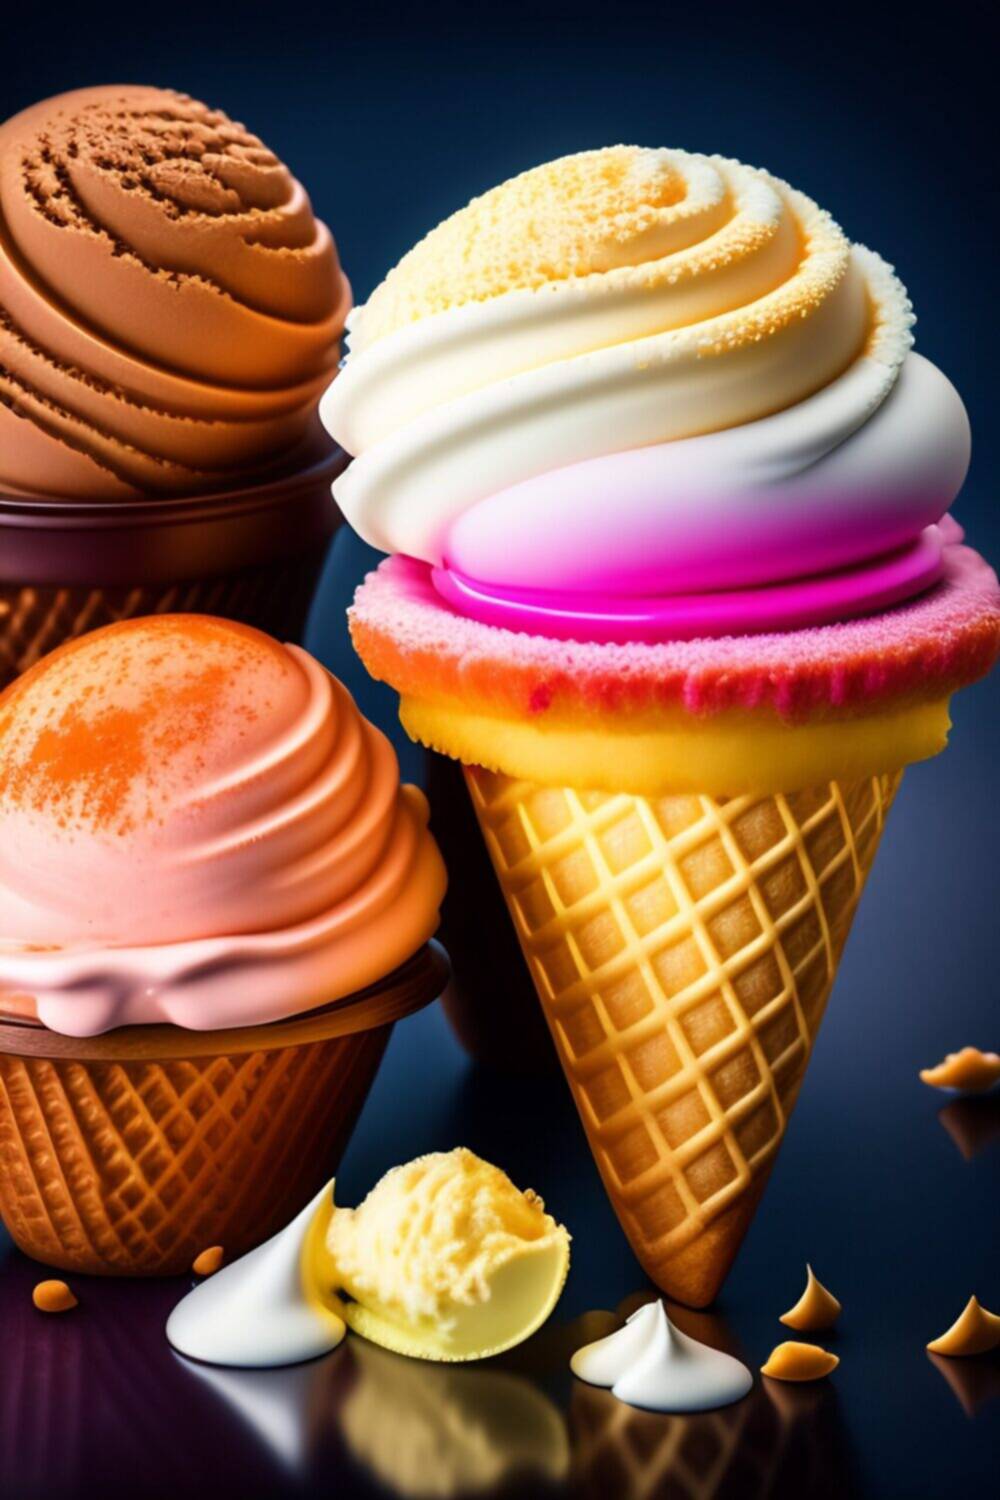 Крупнейший в мире фестиваль мороженого - фестиваль мороженого во Флоренции, Италия